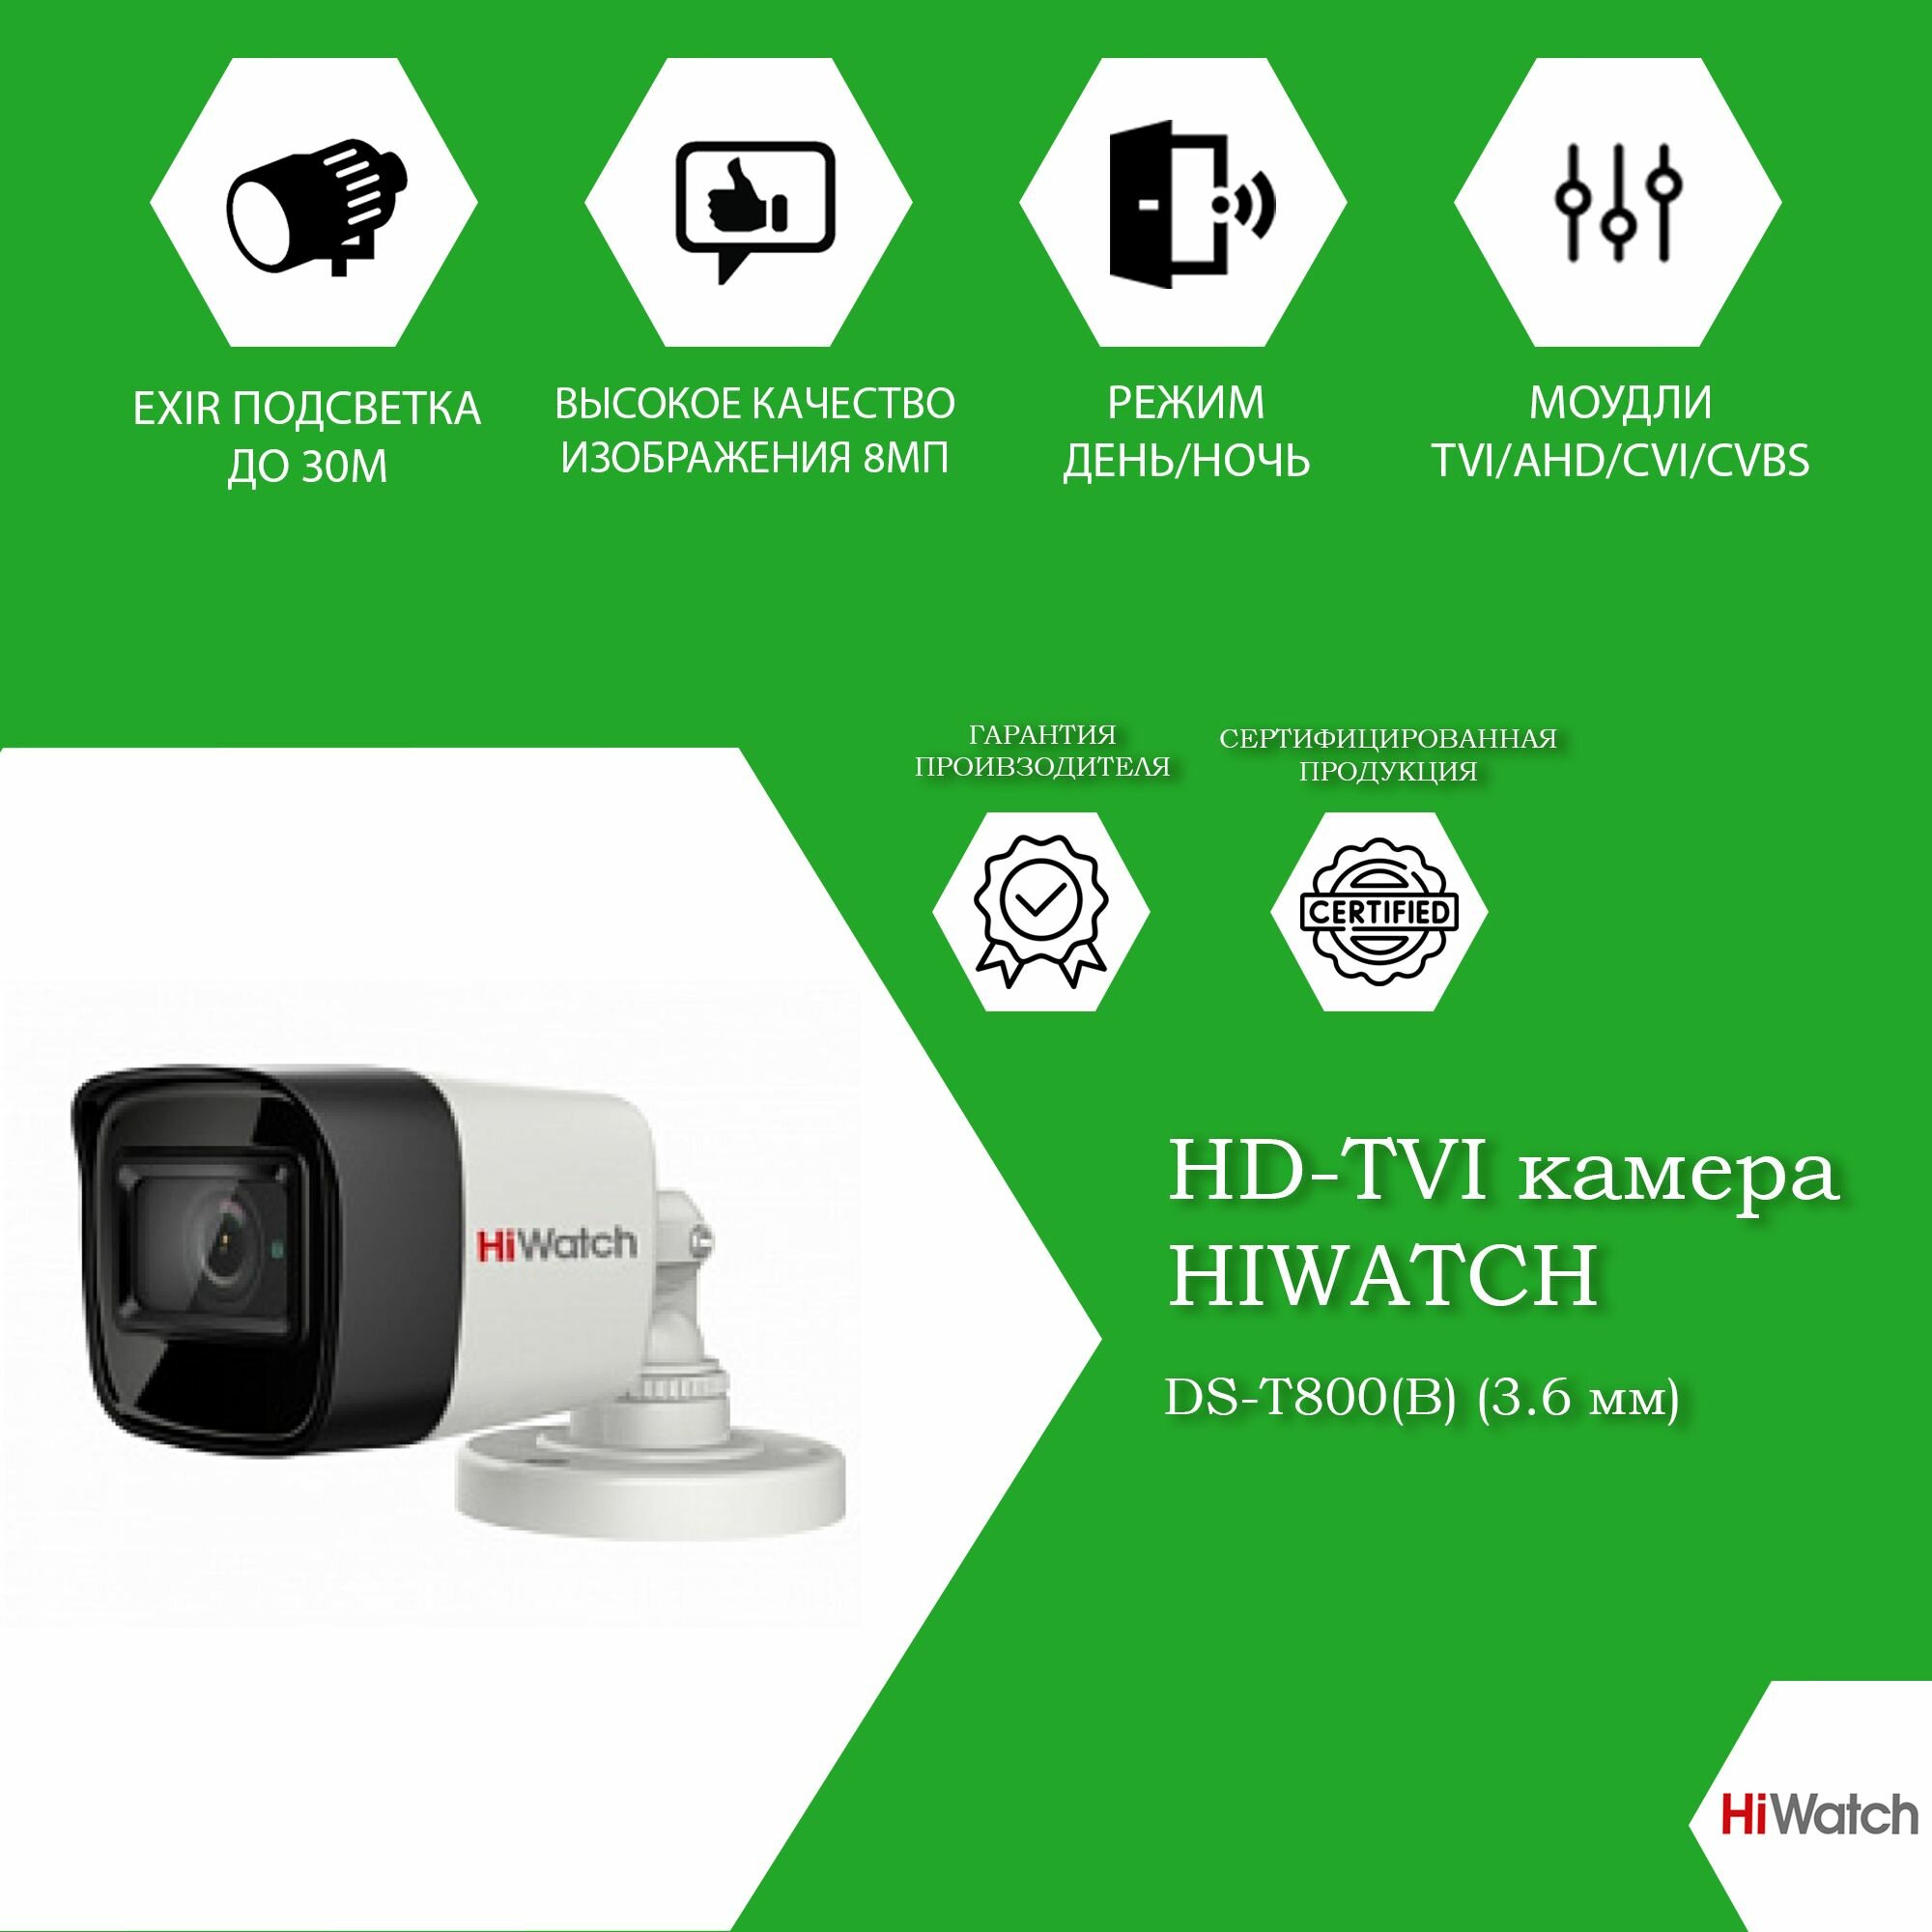 8Мп уличная цилиндрическая HD-TVI камера HiWatch DS-T800(B)(3.6mm) с EXIR-подсветкой до 30м